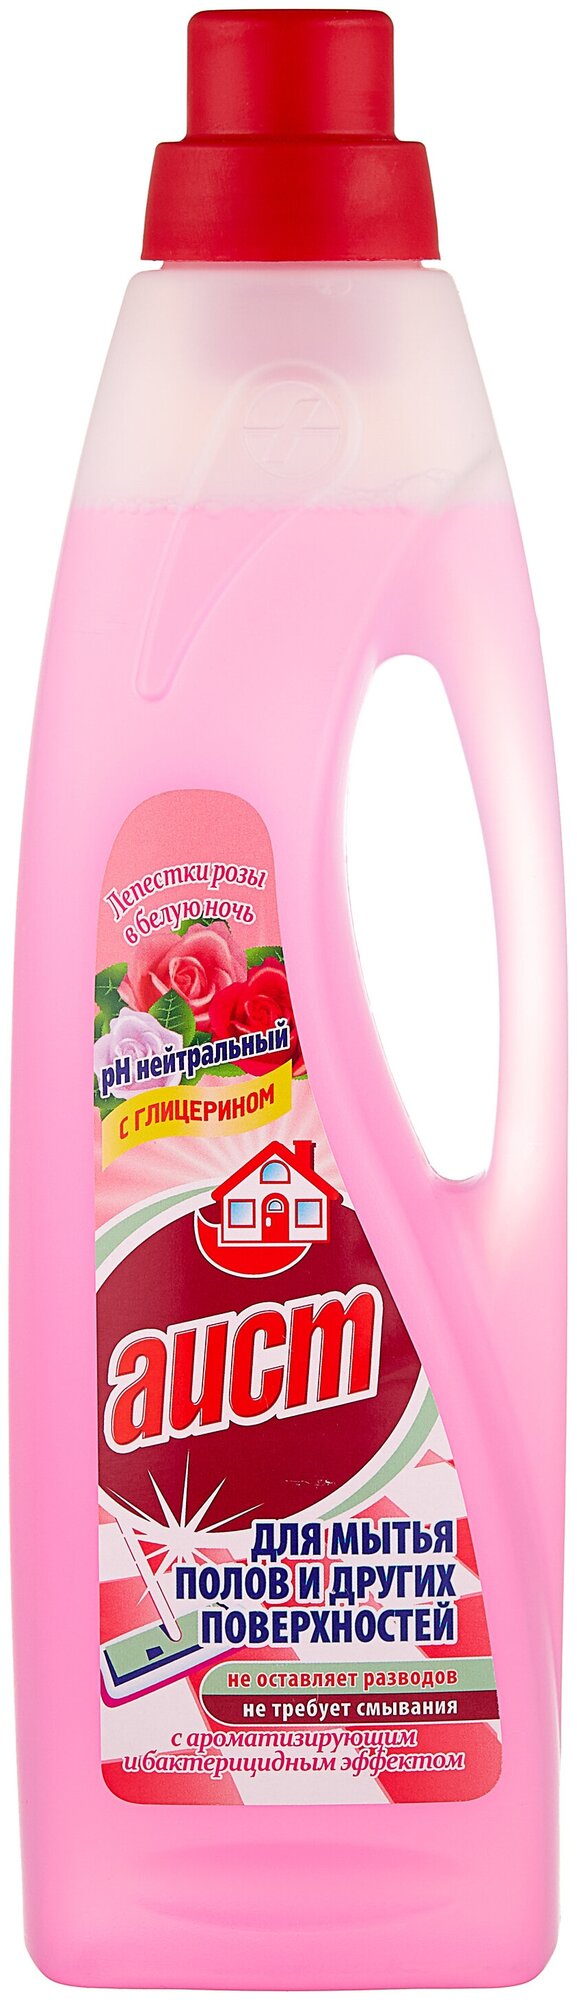 Аист средство для мытья полов и других поверхностей Лепестки розы в белую ночь